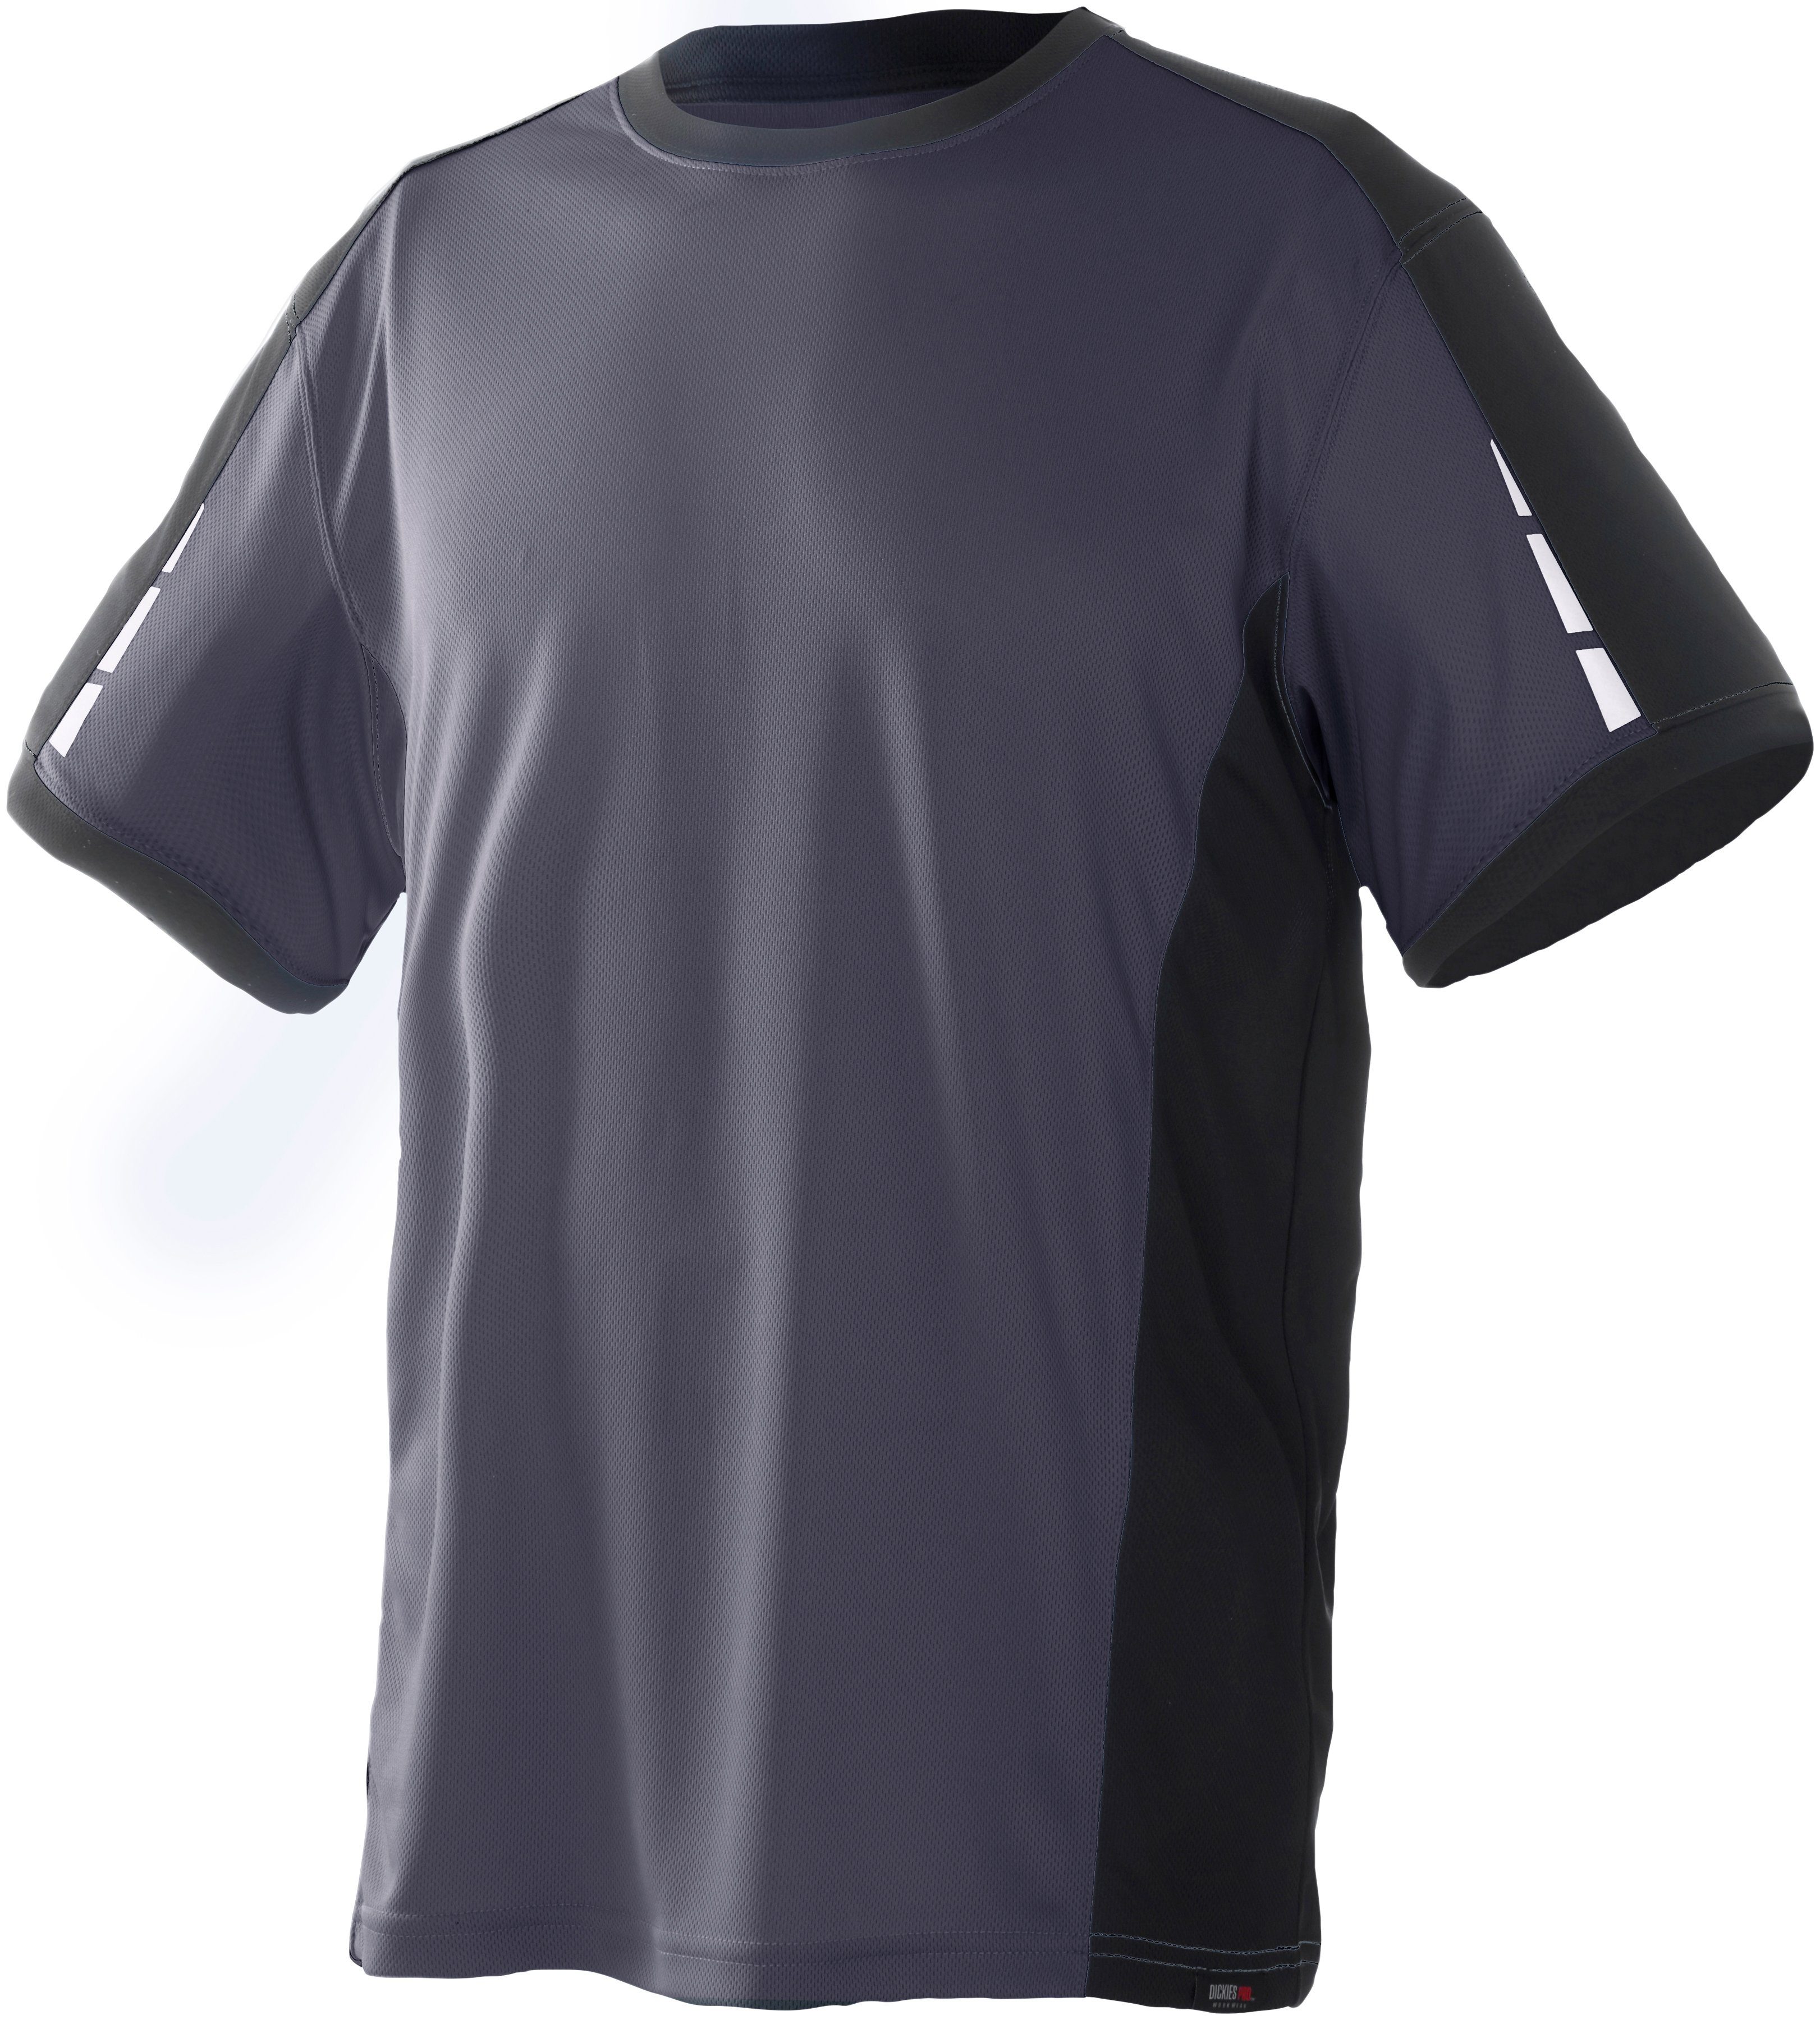 Details Ärmeln an Pro den T-Shirt mit Dickies grau-schwarz reflektierenden